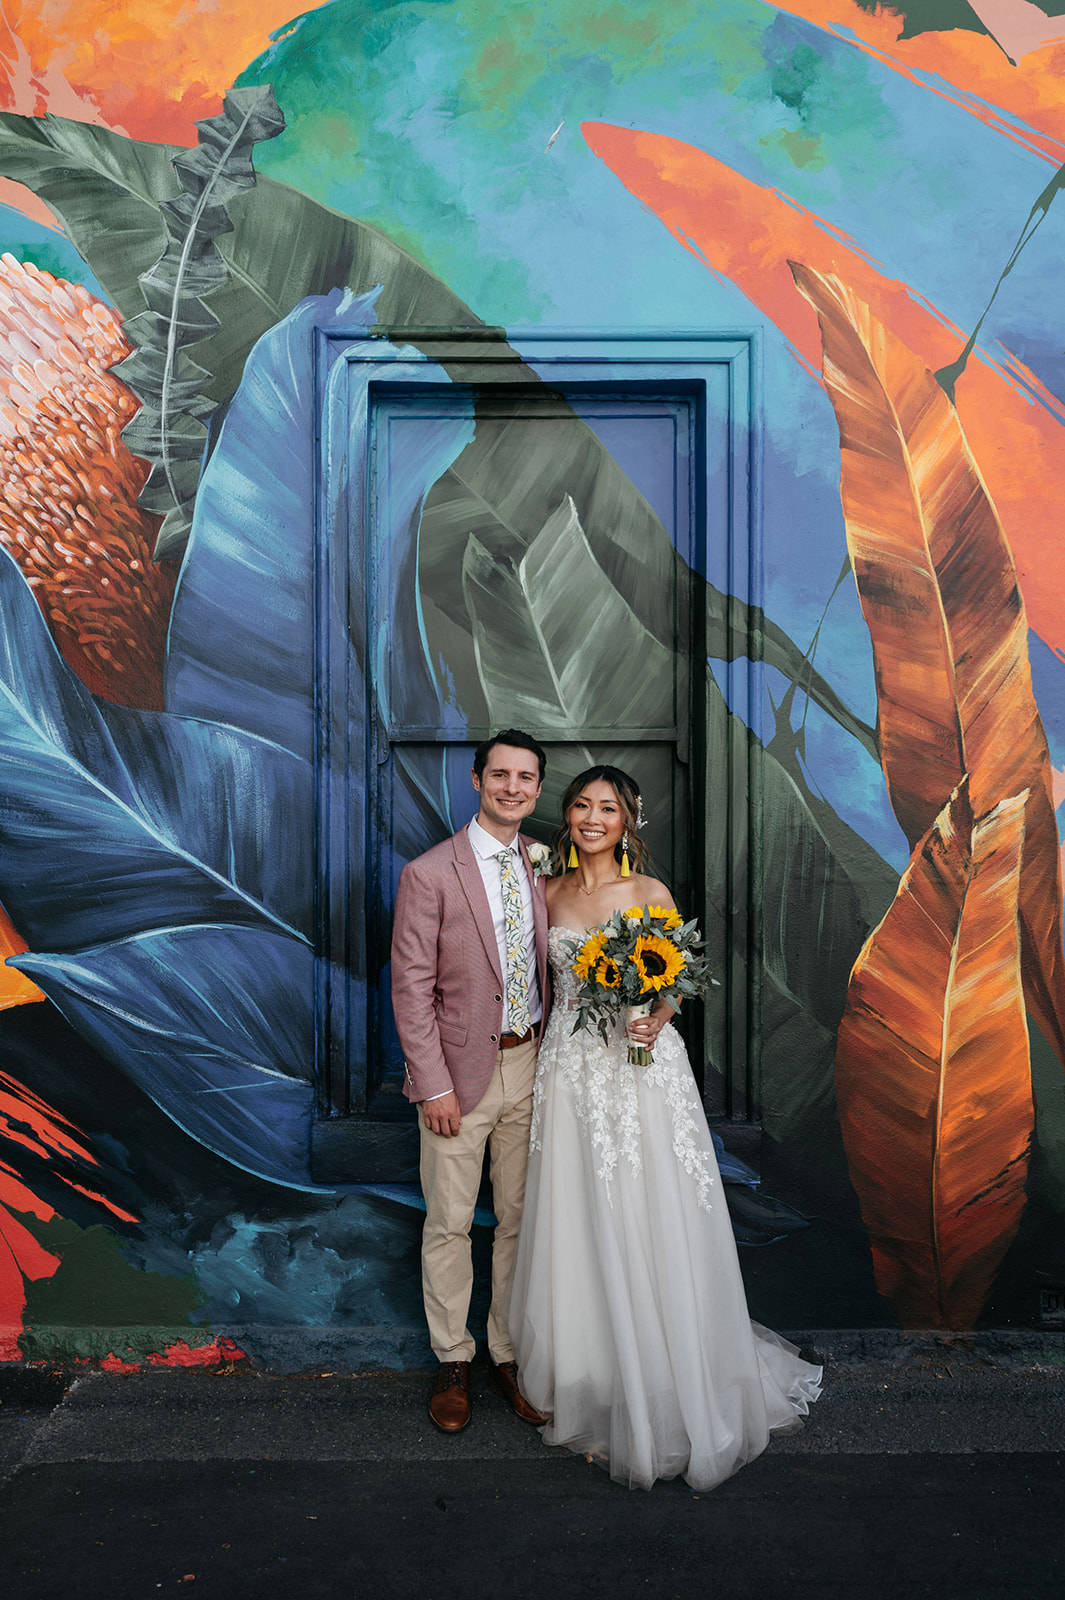 Inner city garden wedding at Glasshaus. Photos by Wren Steiner. Jessie + Tom